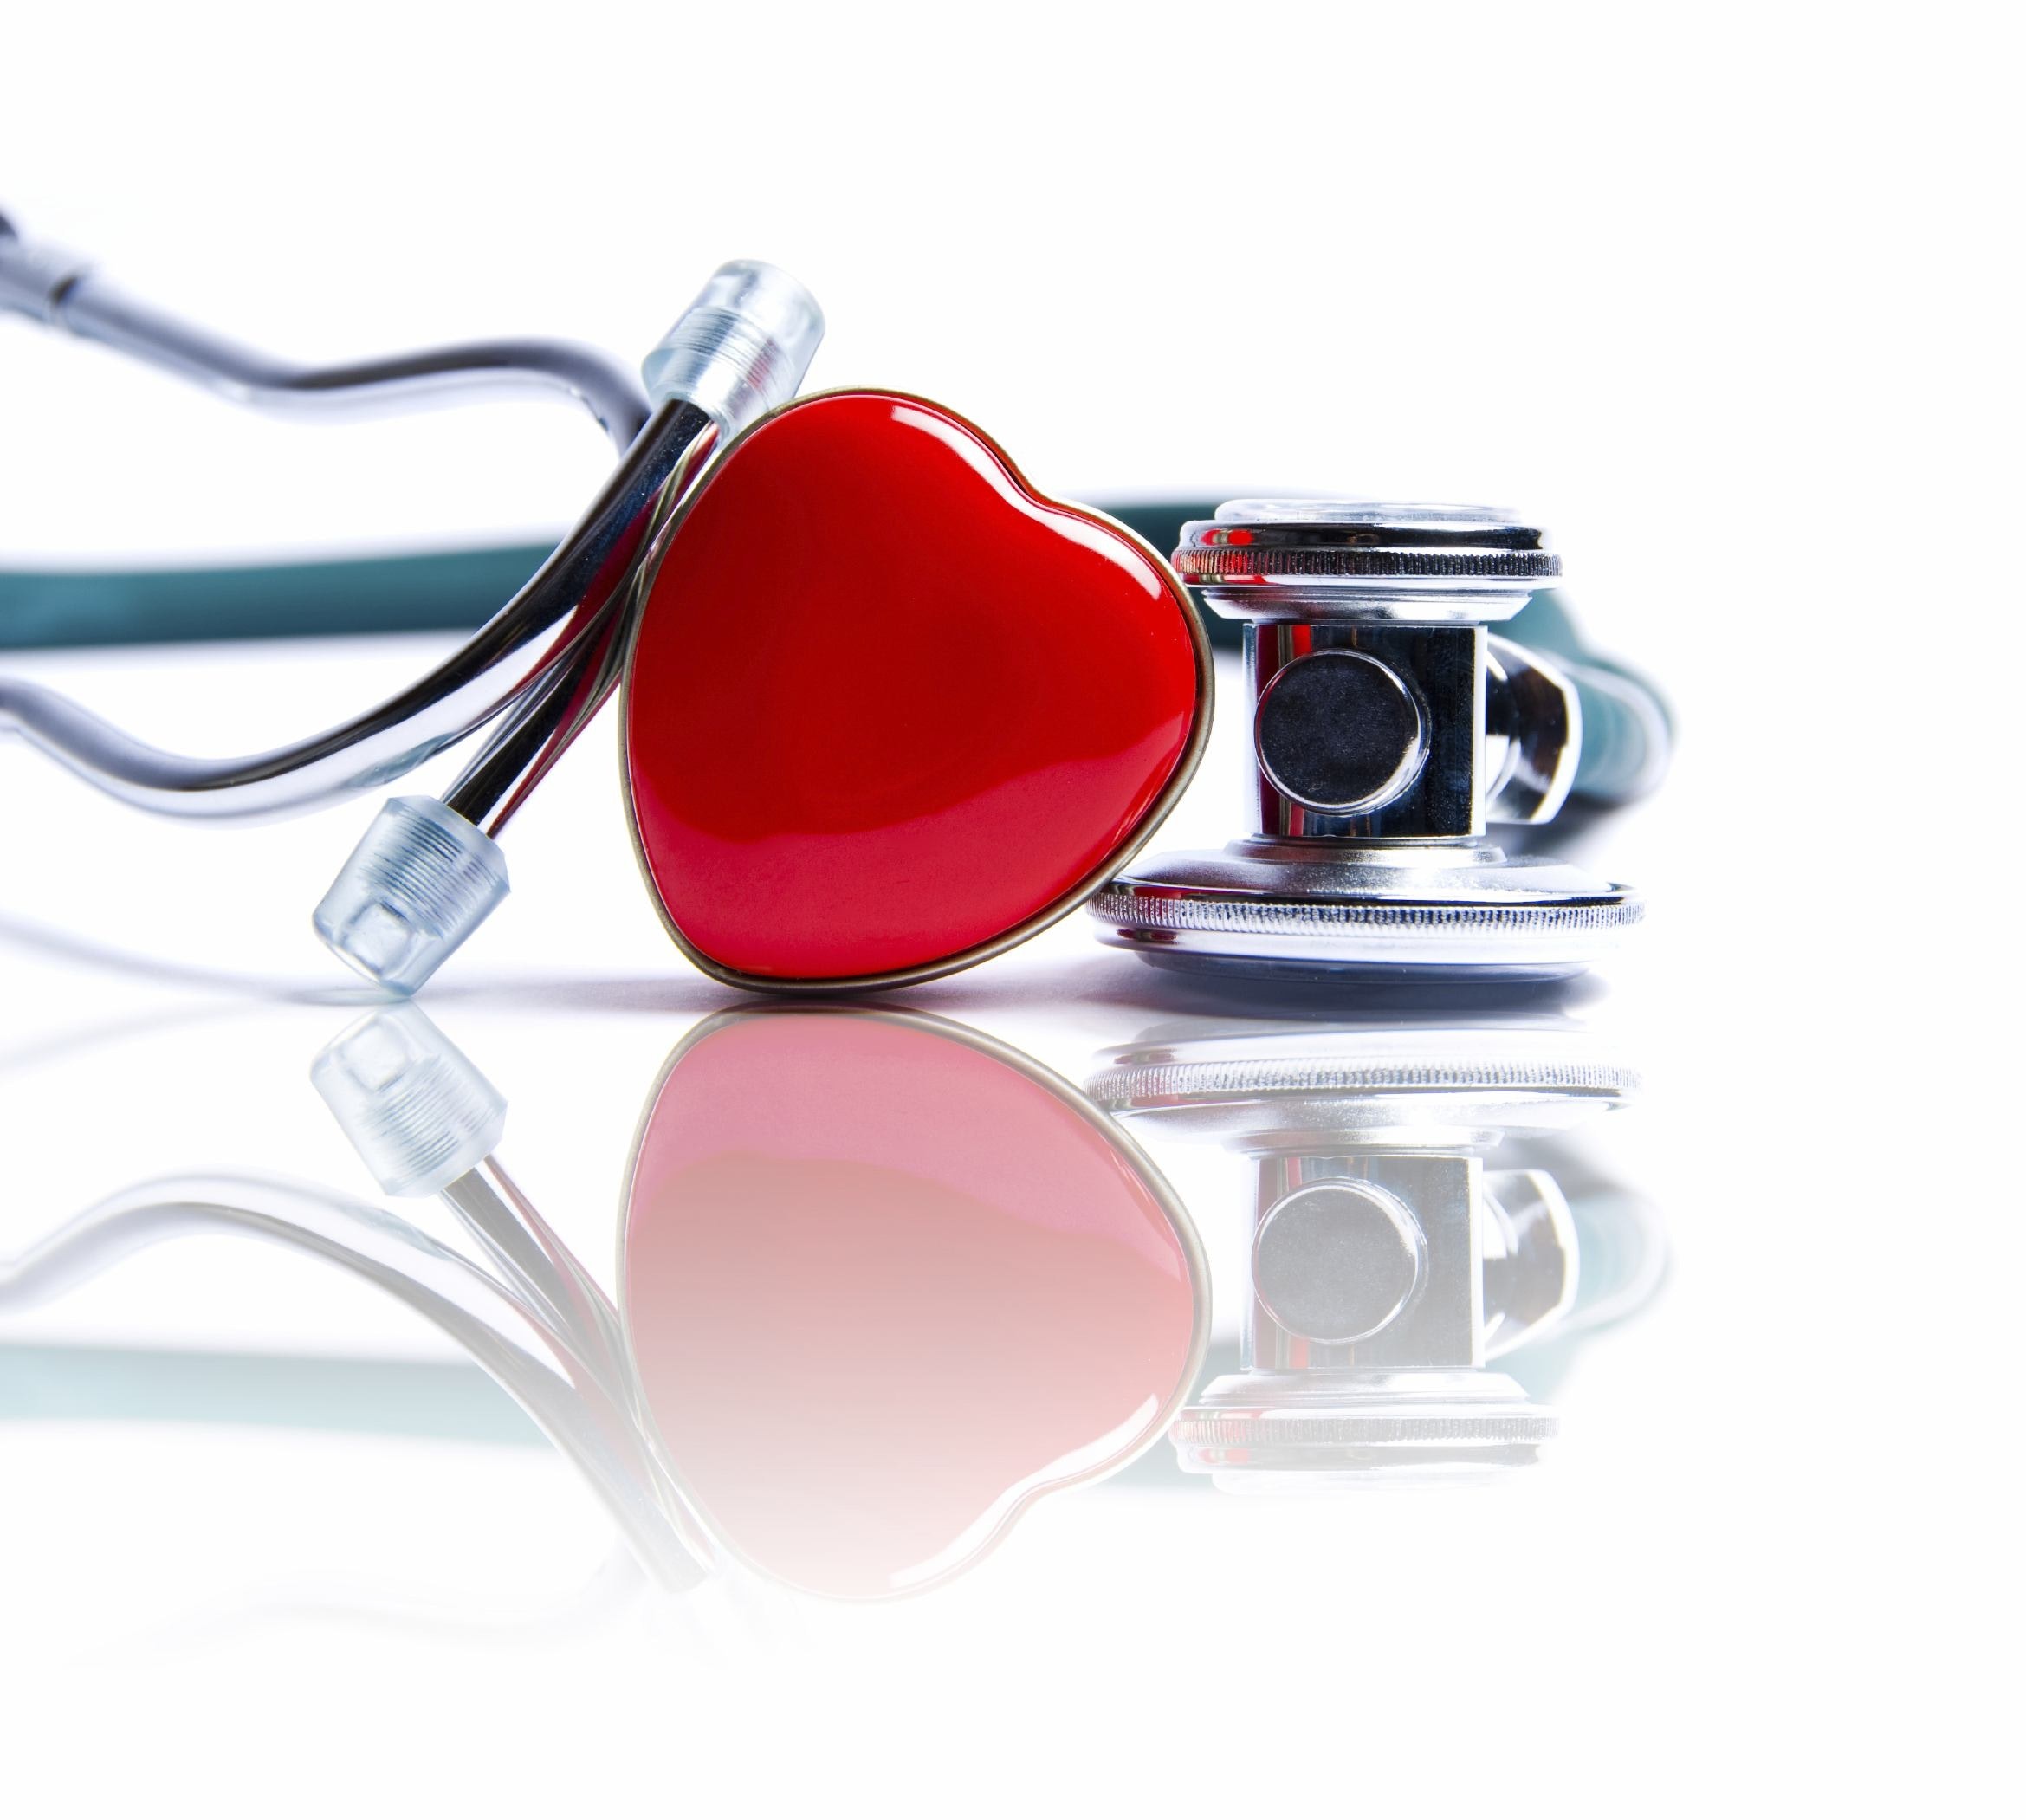 Je hipertenzija kardiovaskularna bolest?